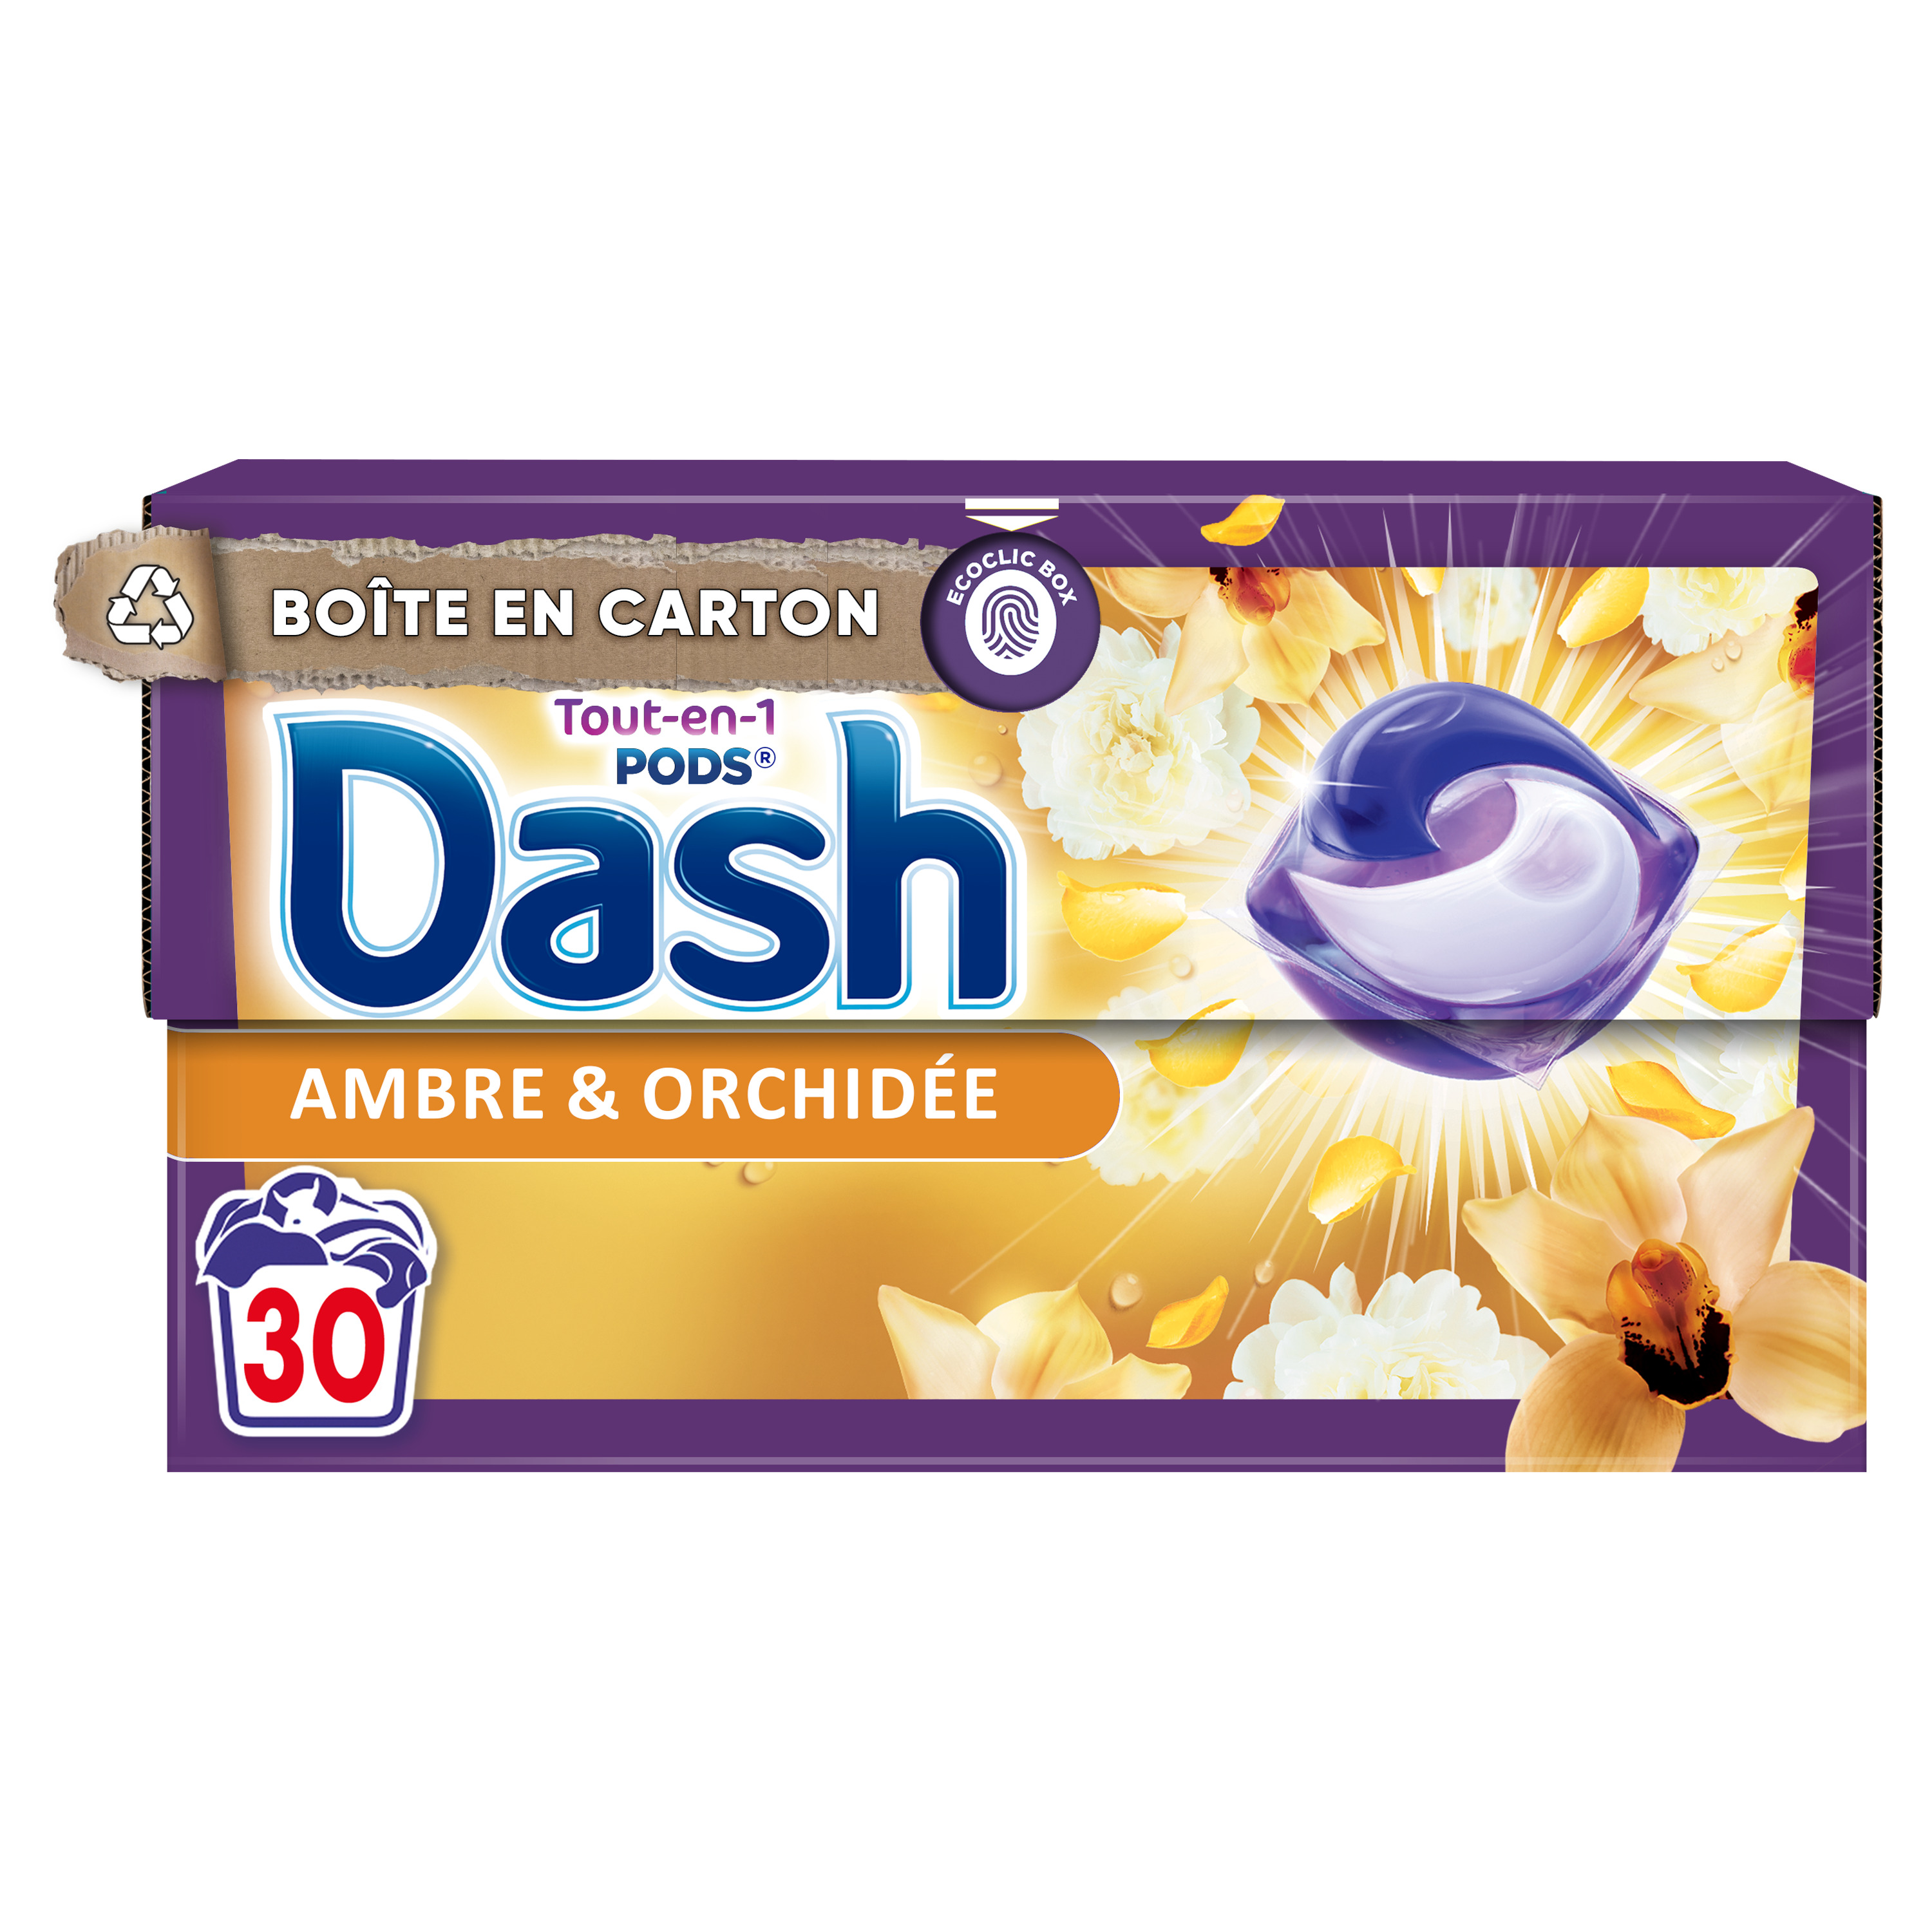 DASH Pods lessive capsules tout en 1 lavande et camomille 30 capsules pas  cher 